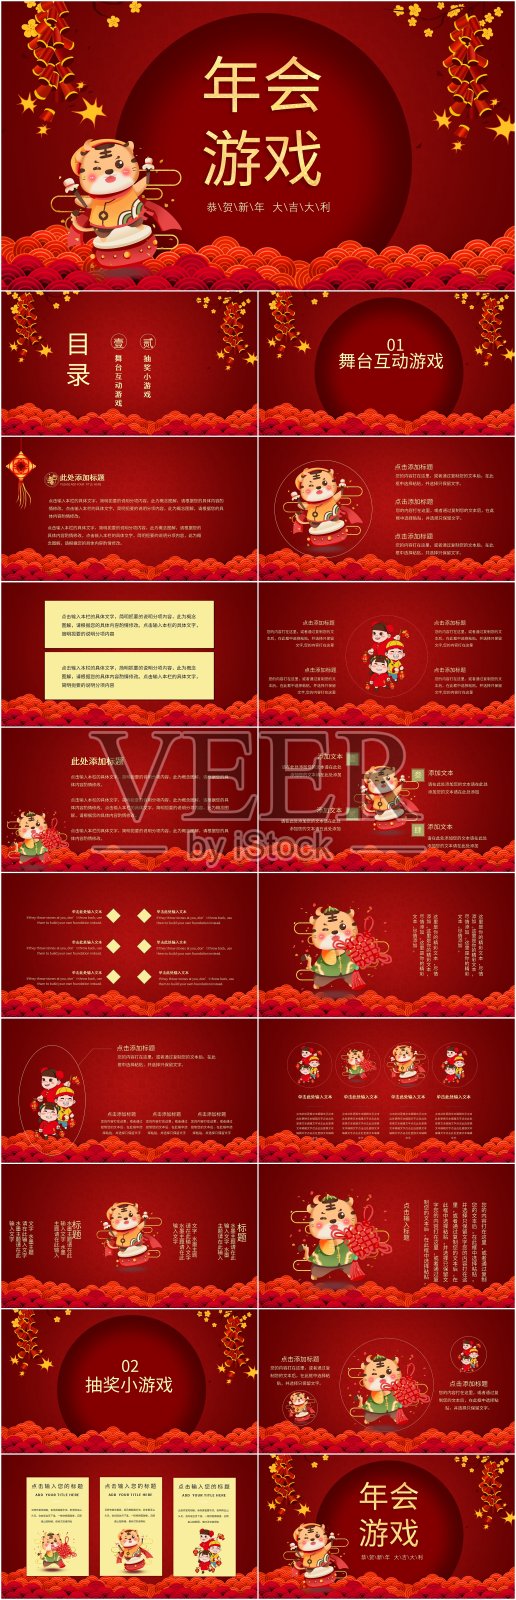 红色中国风年会游戏主题PPT设计模板素材